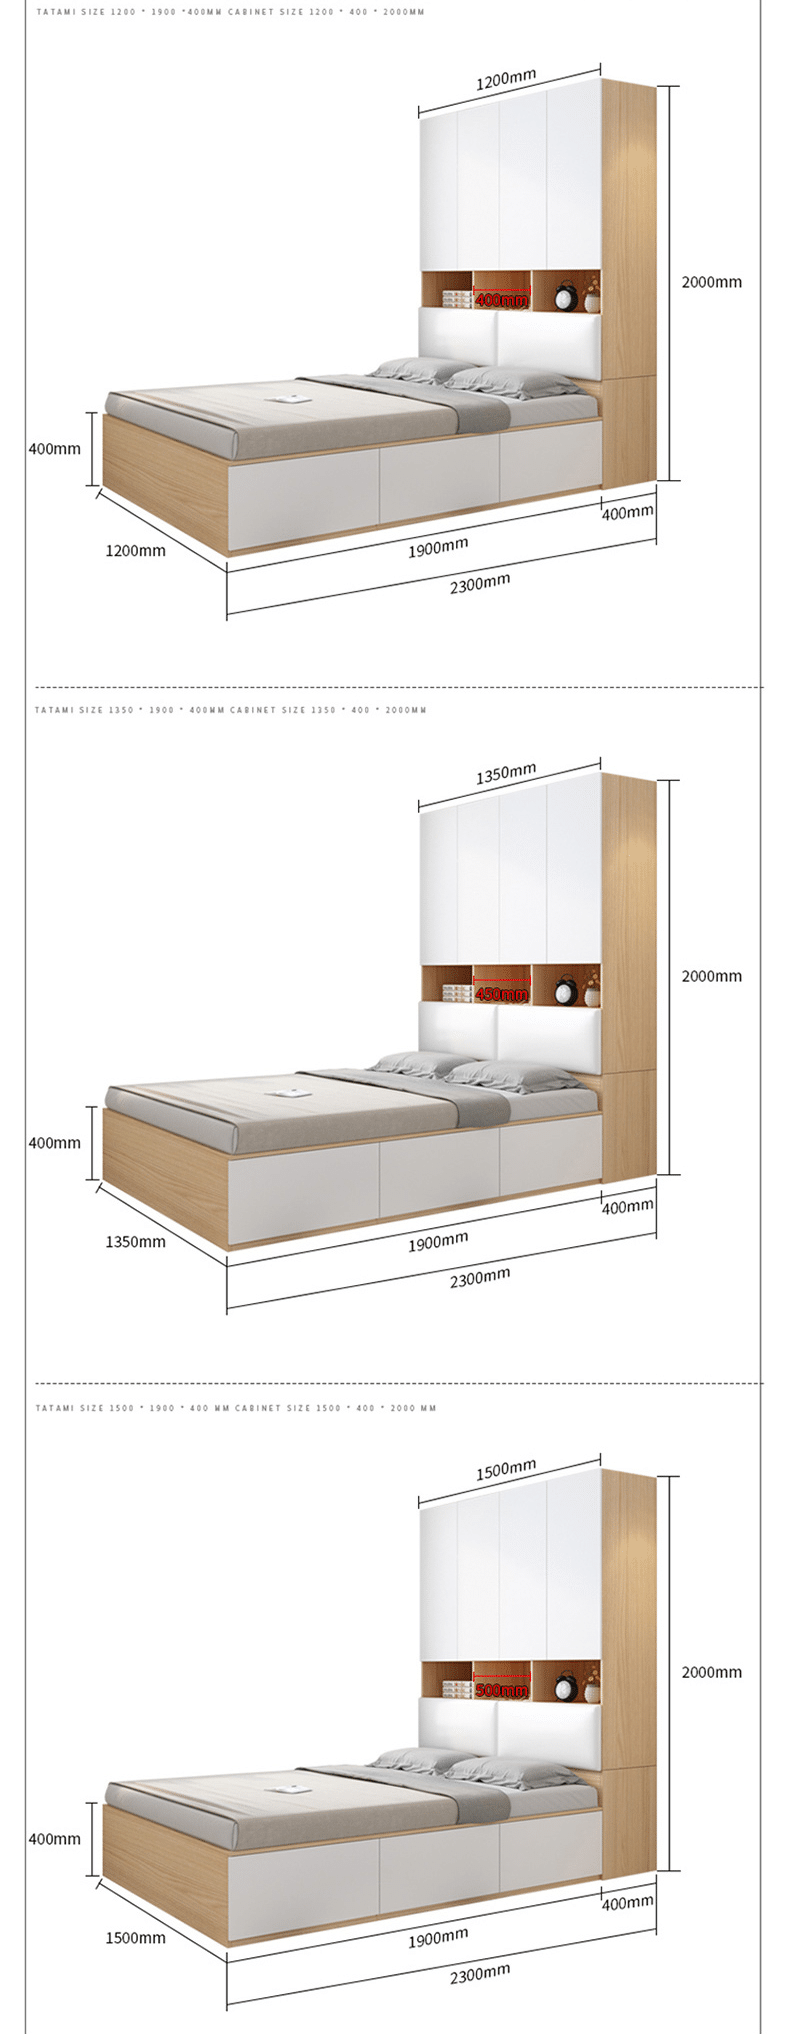 Giường liền tủ thông minh bằng gỗ V3-4105